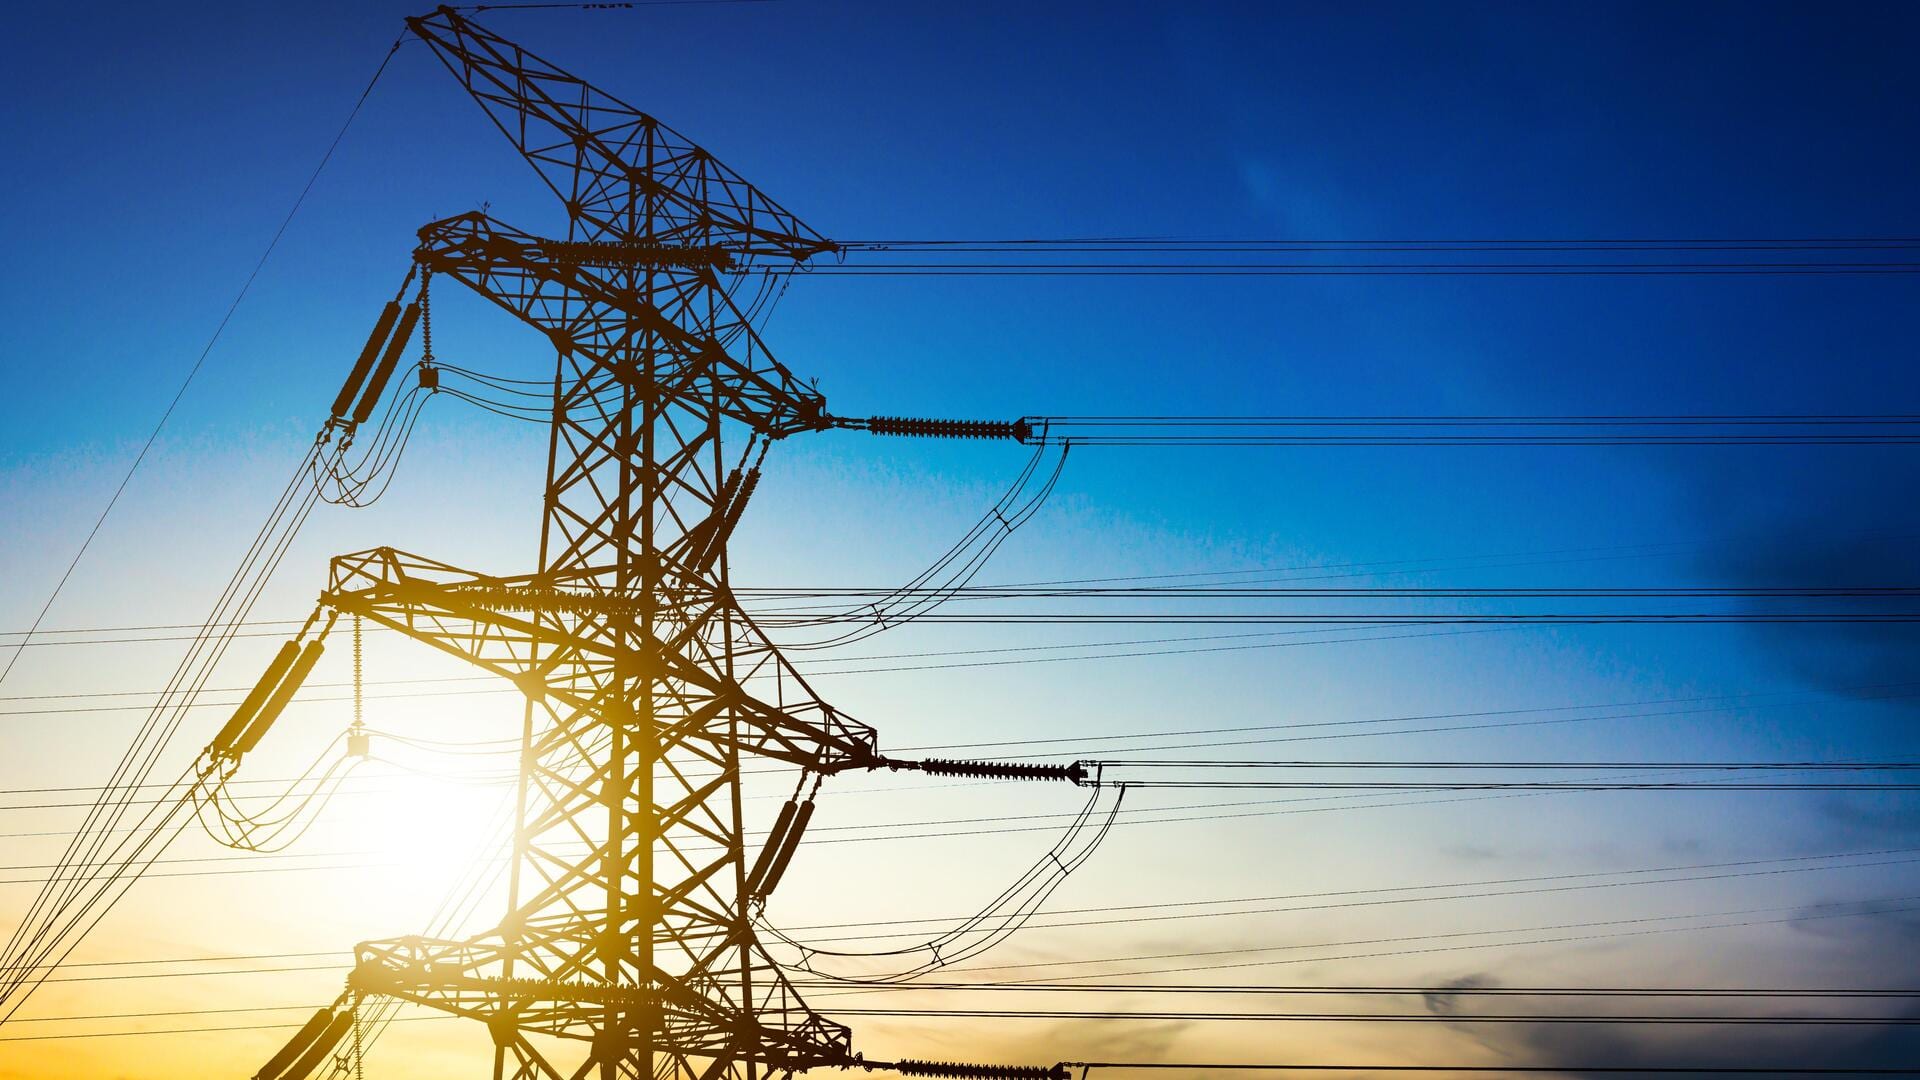 उत्तर प्रदेश: कई विद्युत उत्पादन इकाइयां ठप, 6 घंटे तक बिजली कटौती की आशंका